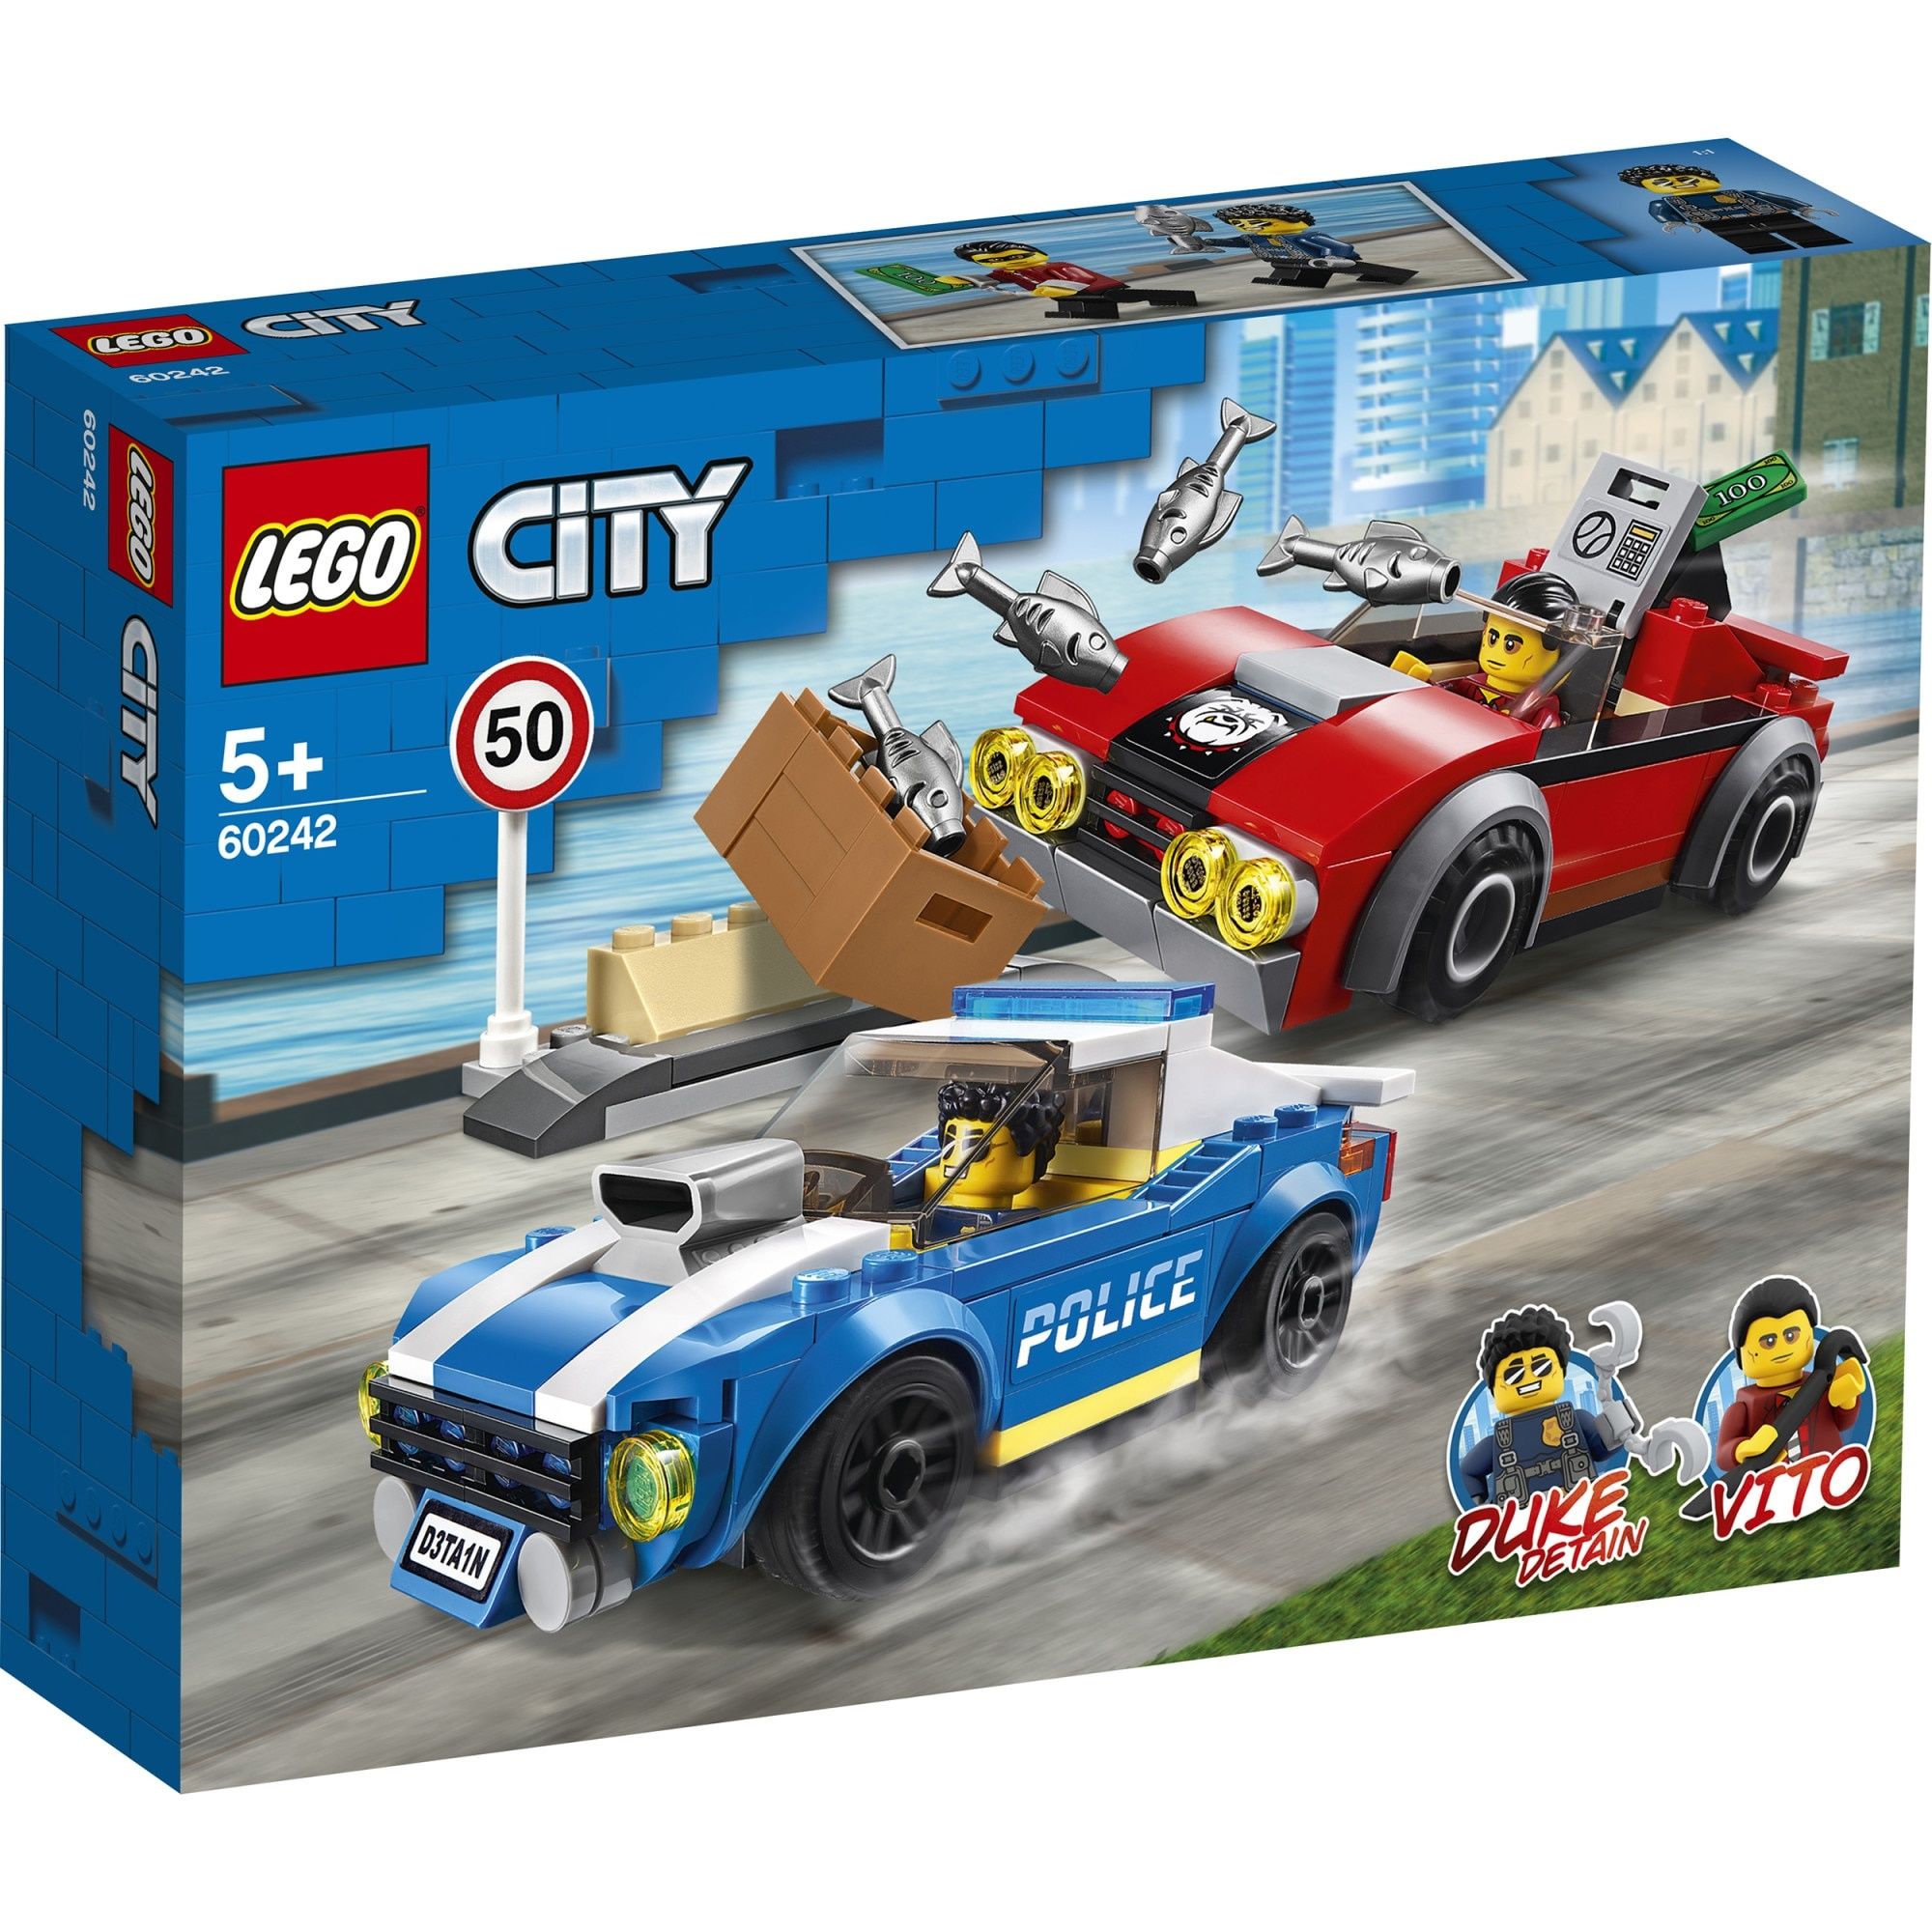 Vând lot Lego City 5+